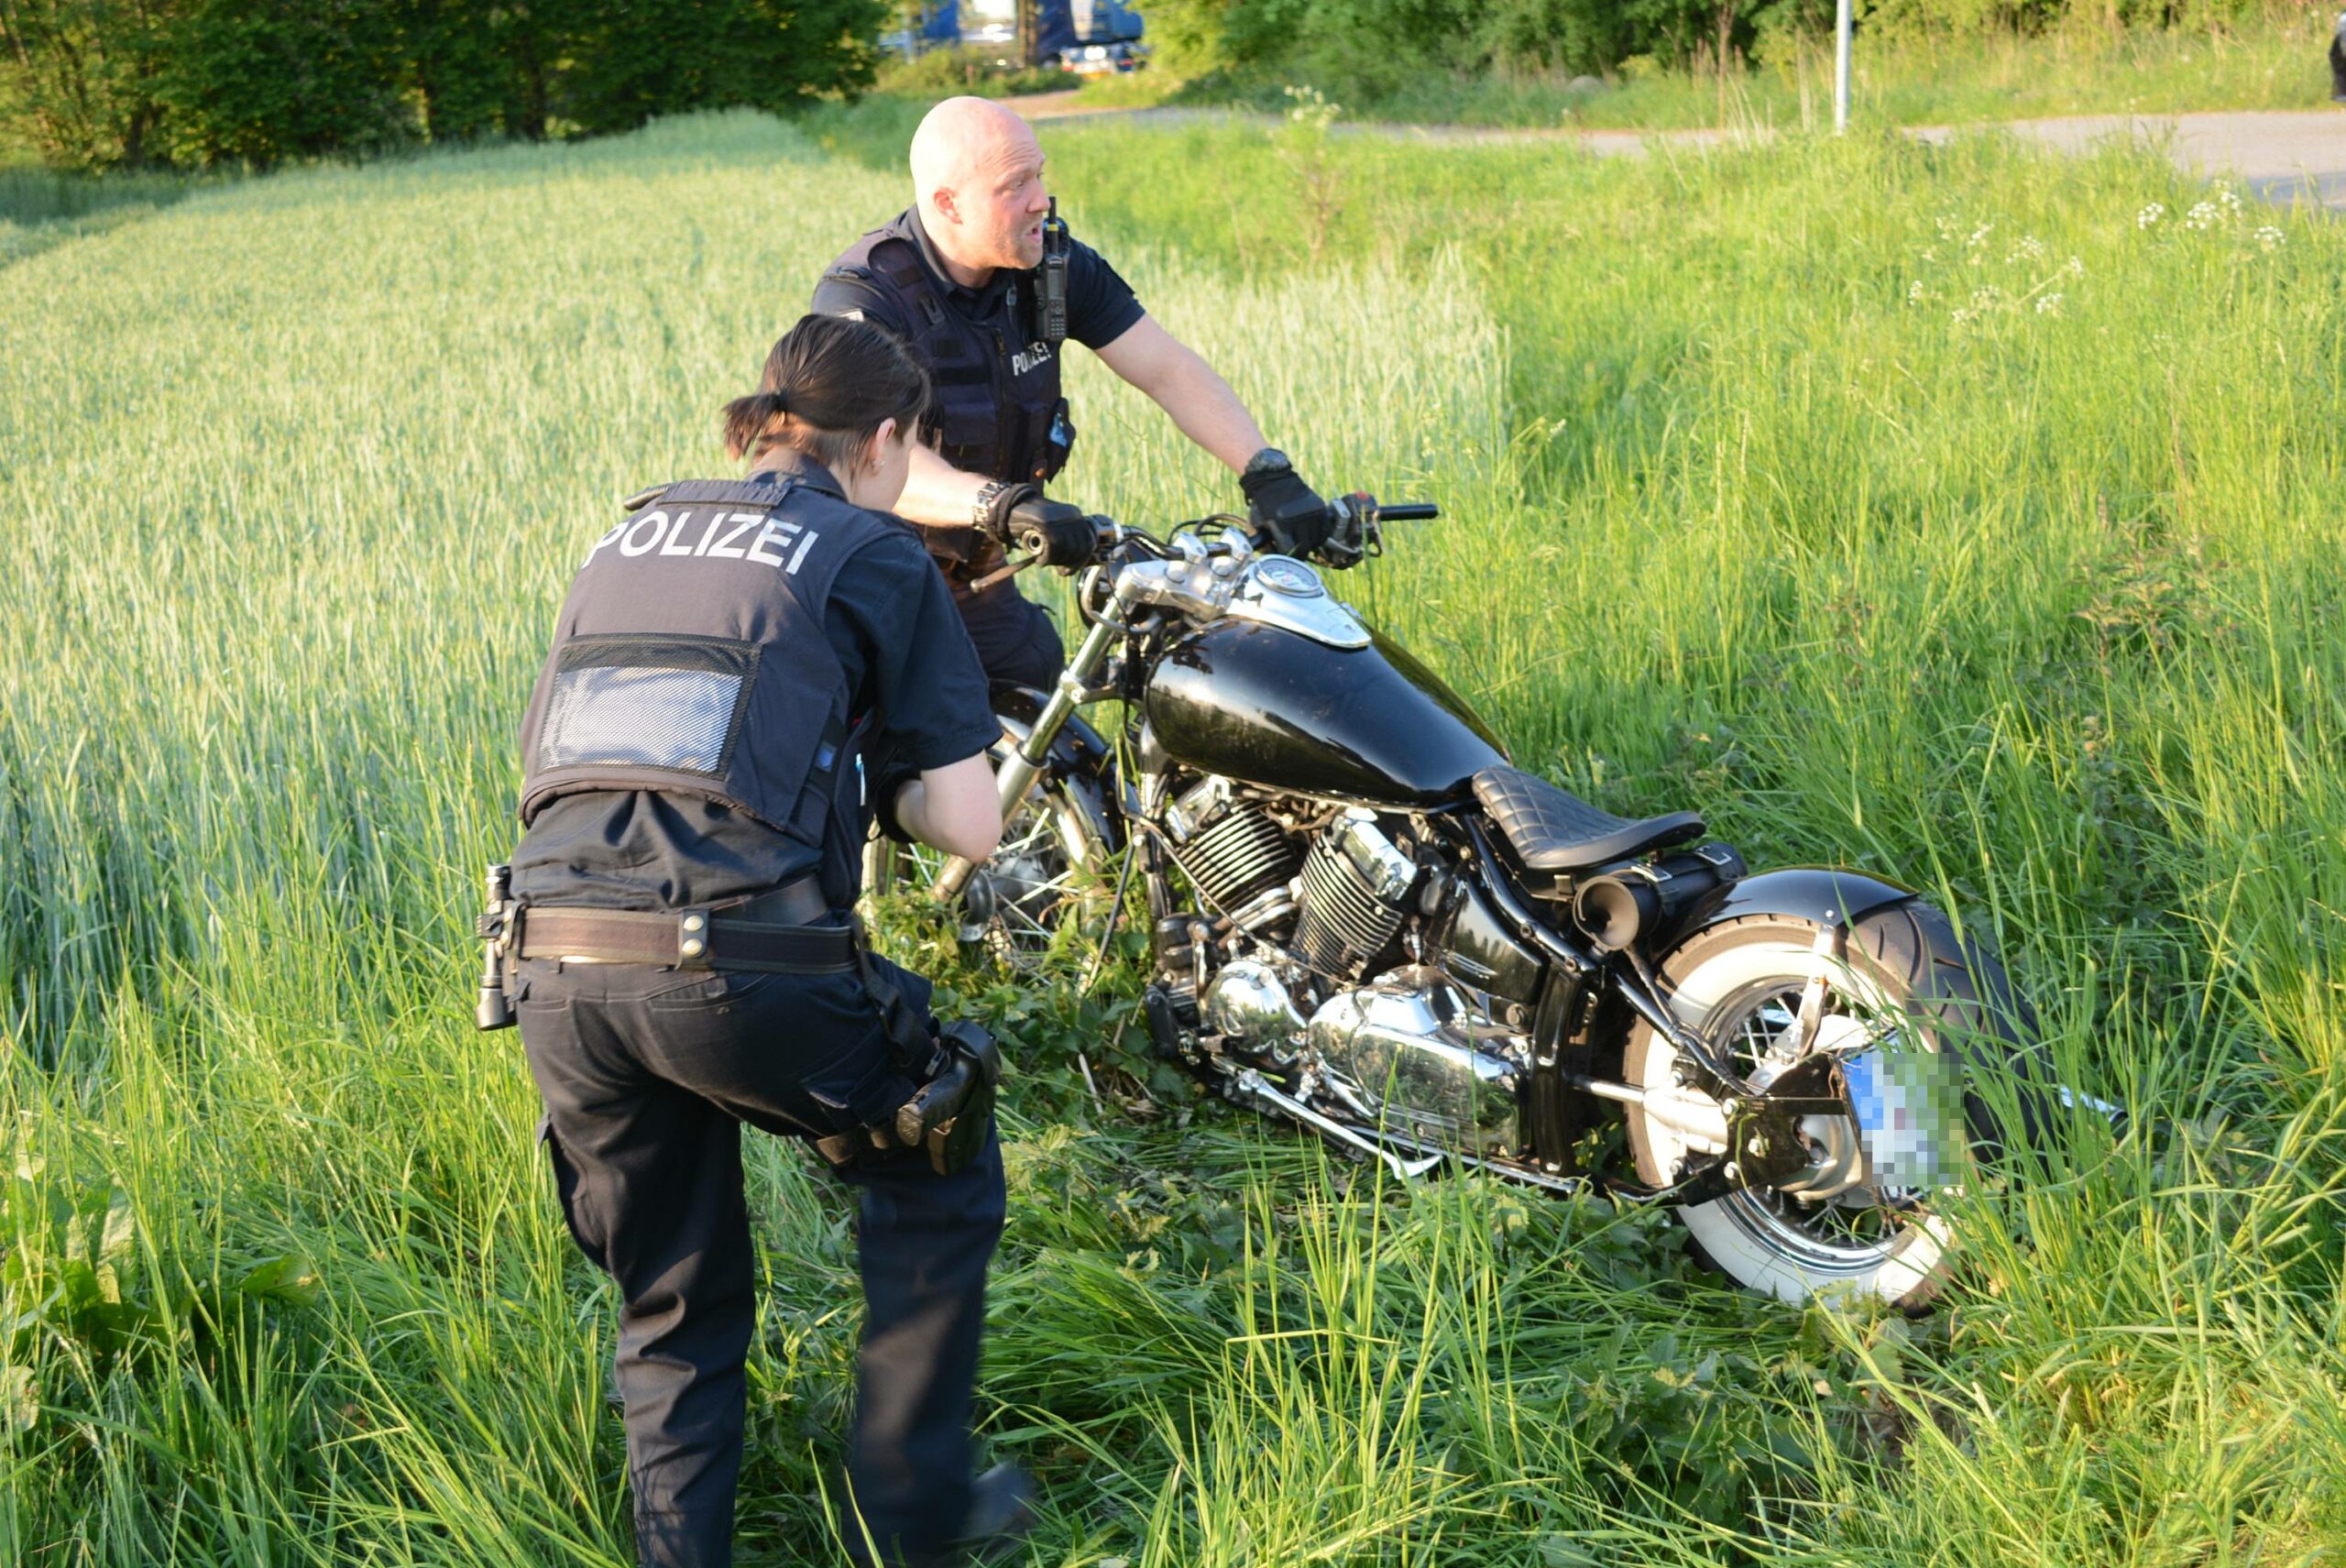 Polizeibeamte richten die Harley-Davidson wieder auf.